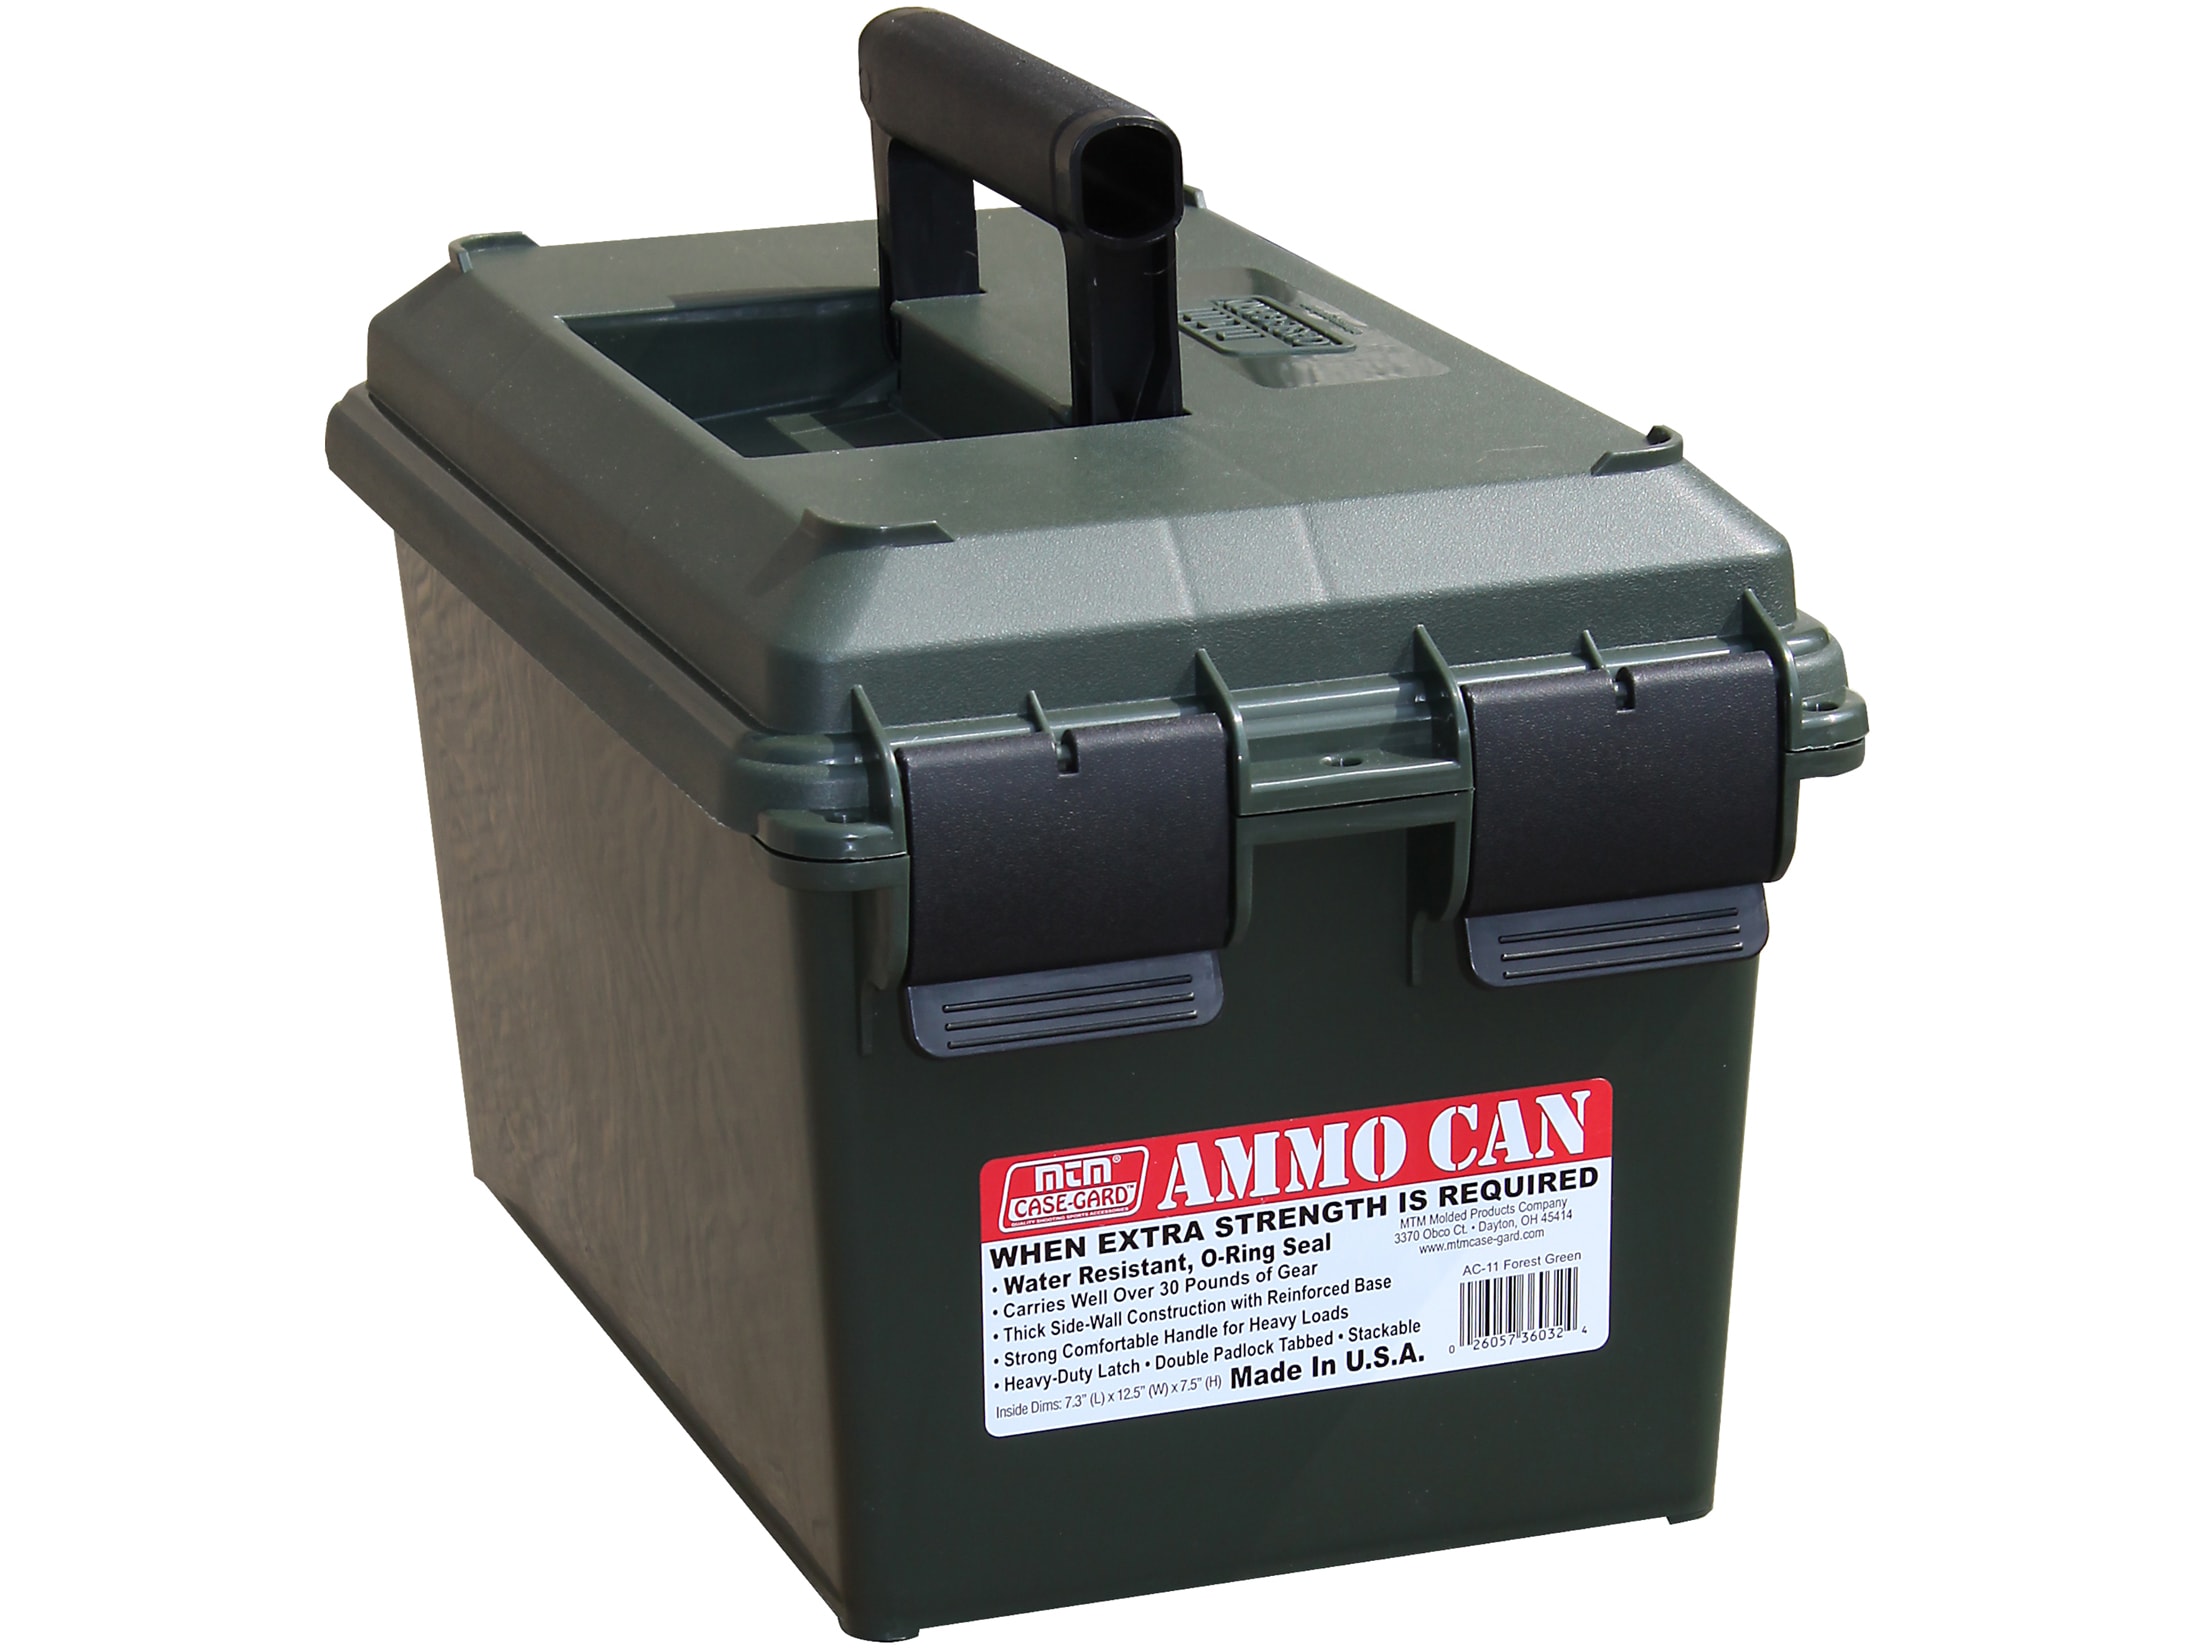 Ammo Boxes & Crates Ammo Storage